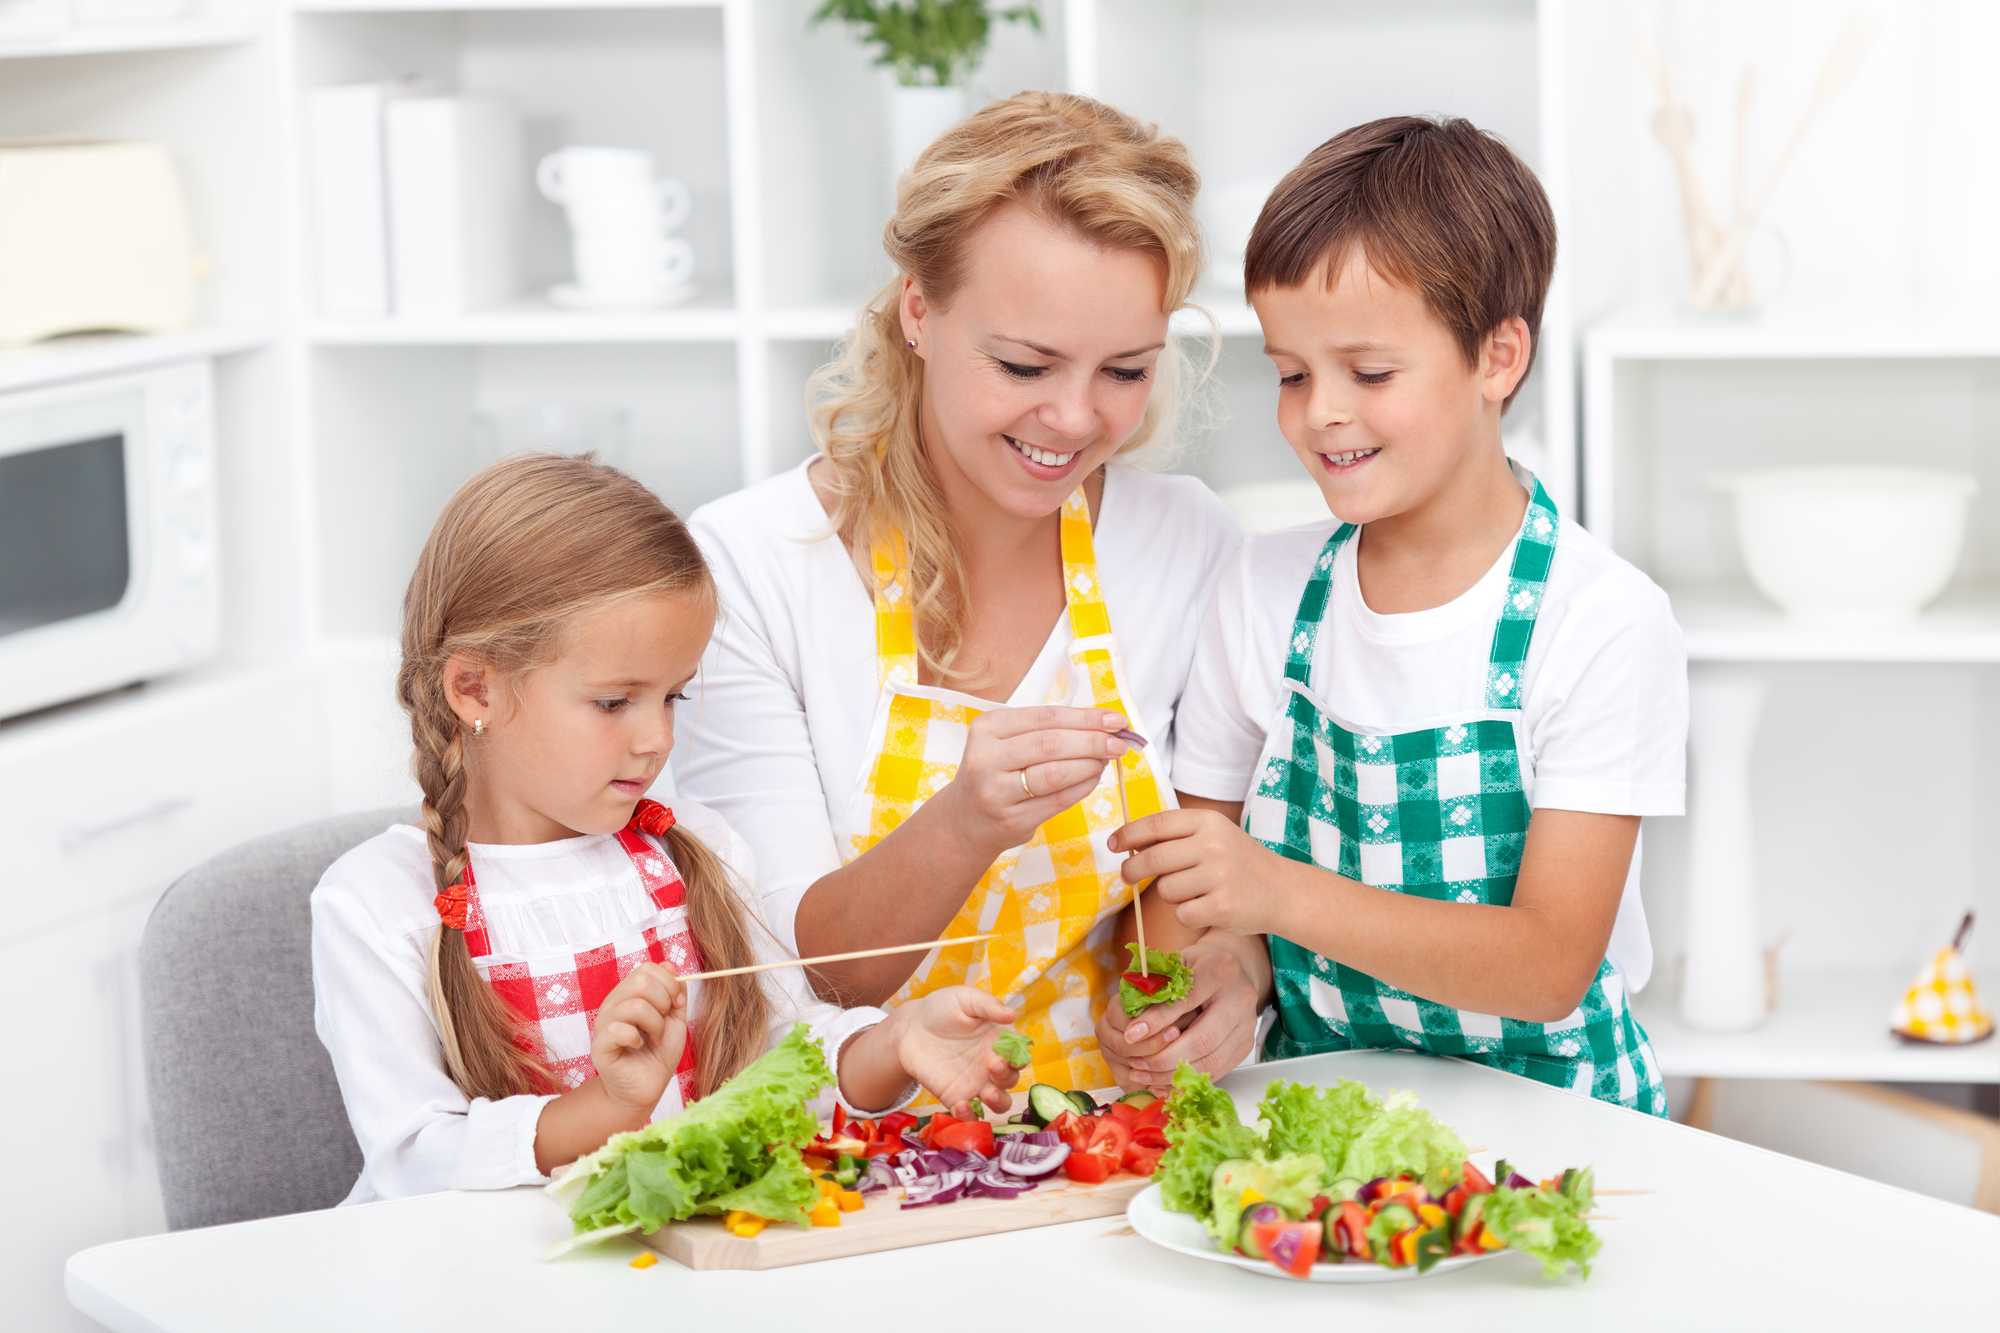 Употребление детьми готовых домашних блюд предоставленных родителями